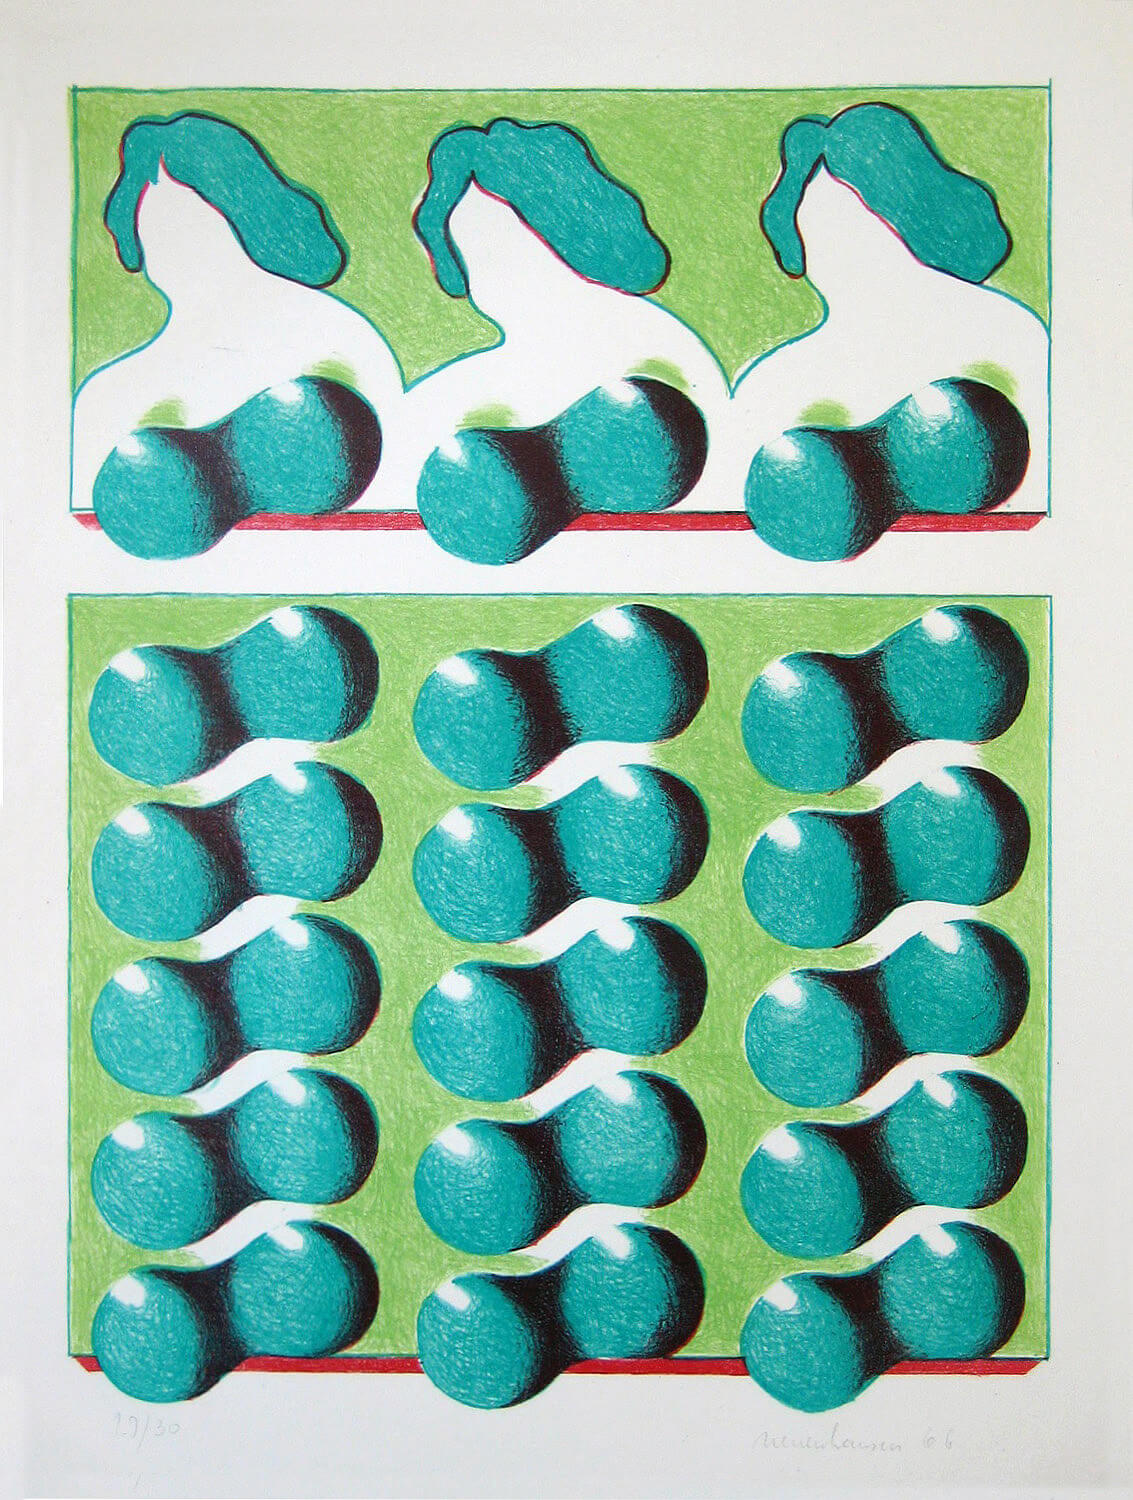 Siegfried Neuenhausen, Busenraster, 1966, Lithographie, Auflage: 30, 60,5 x 44,3 cm